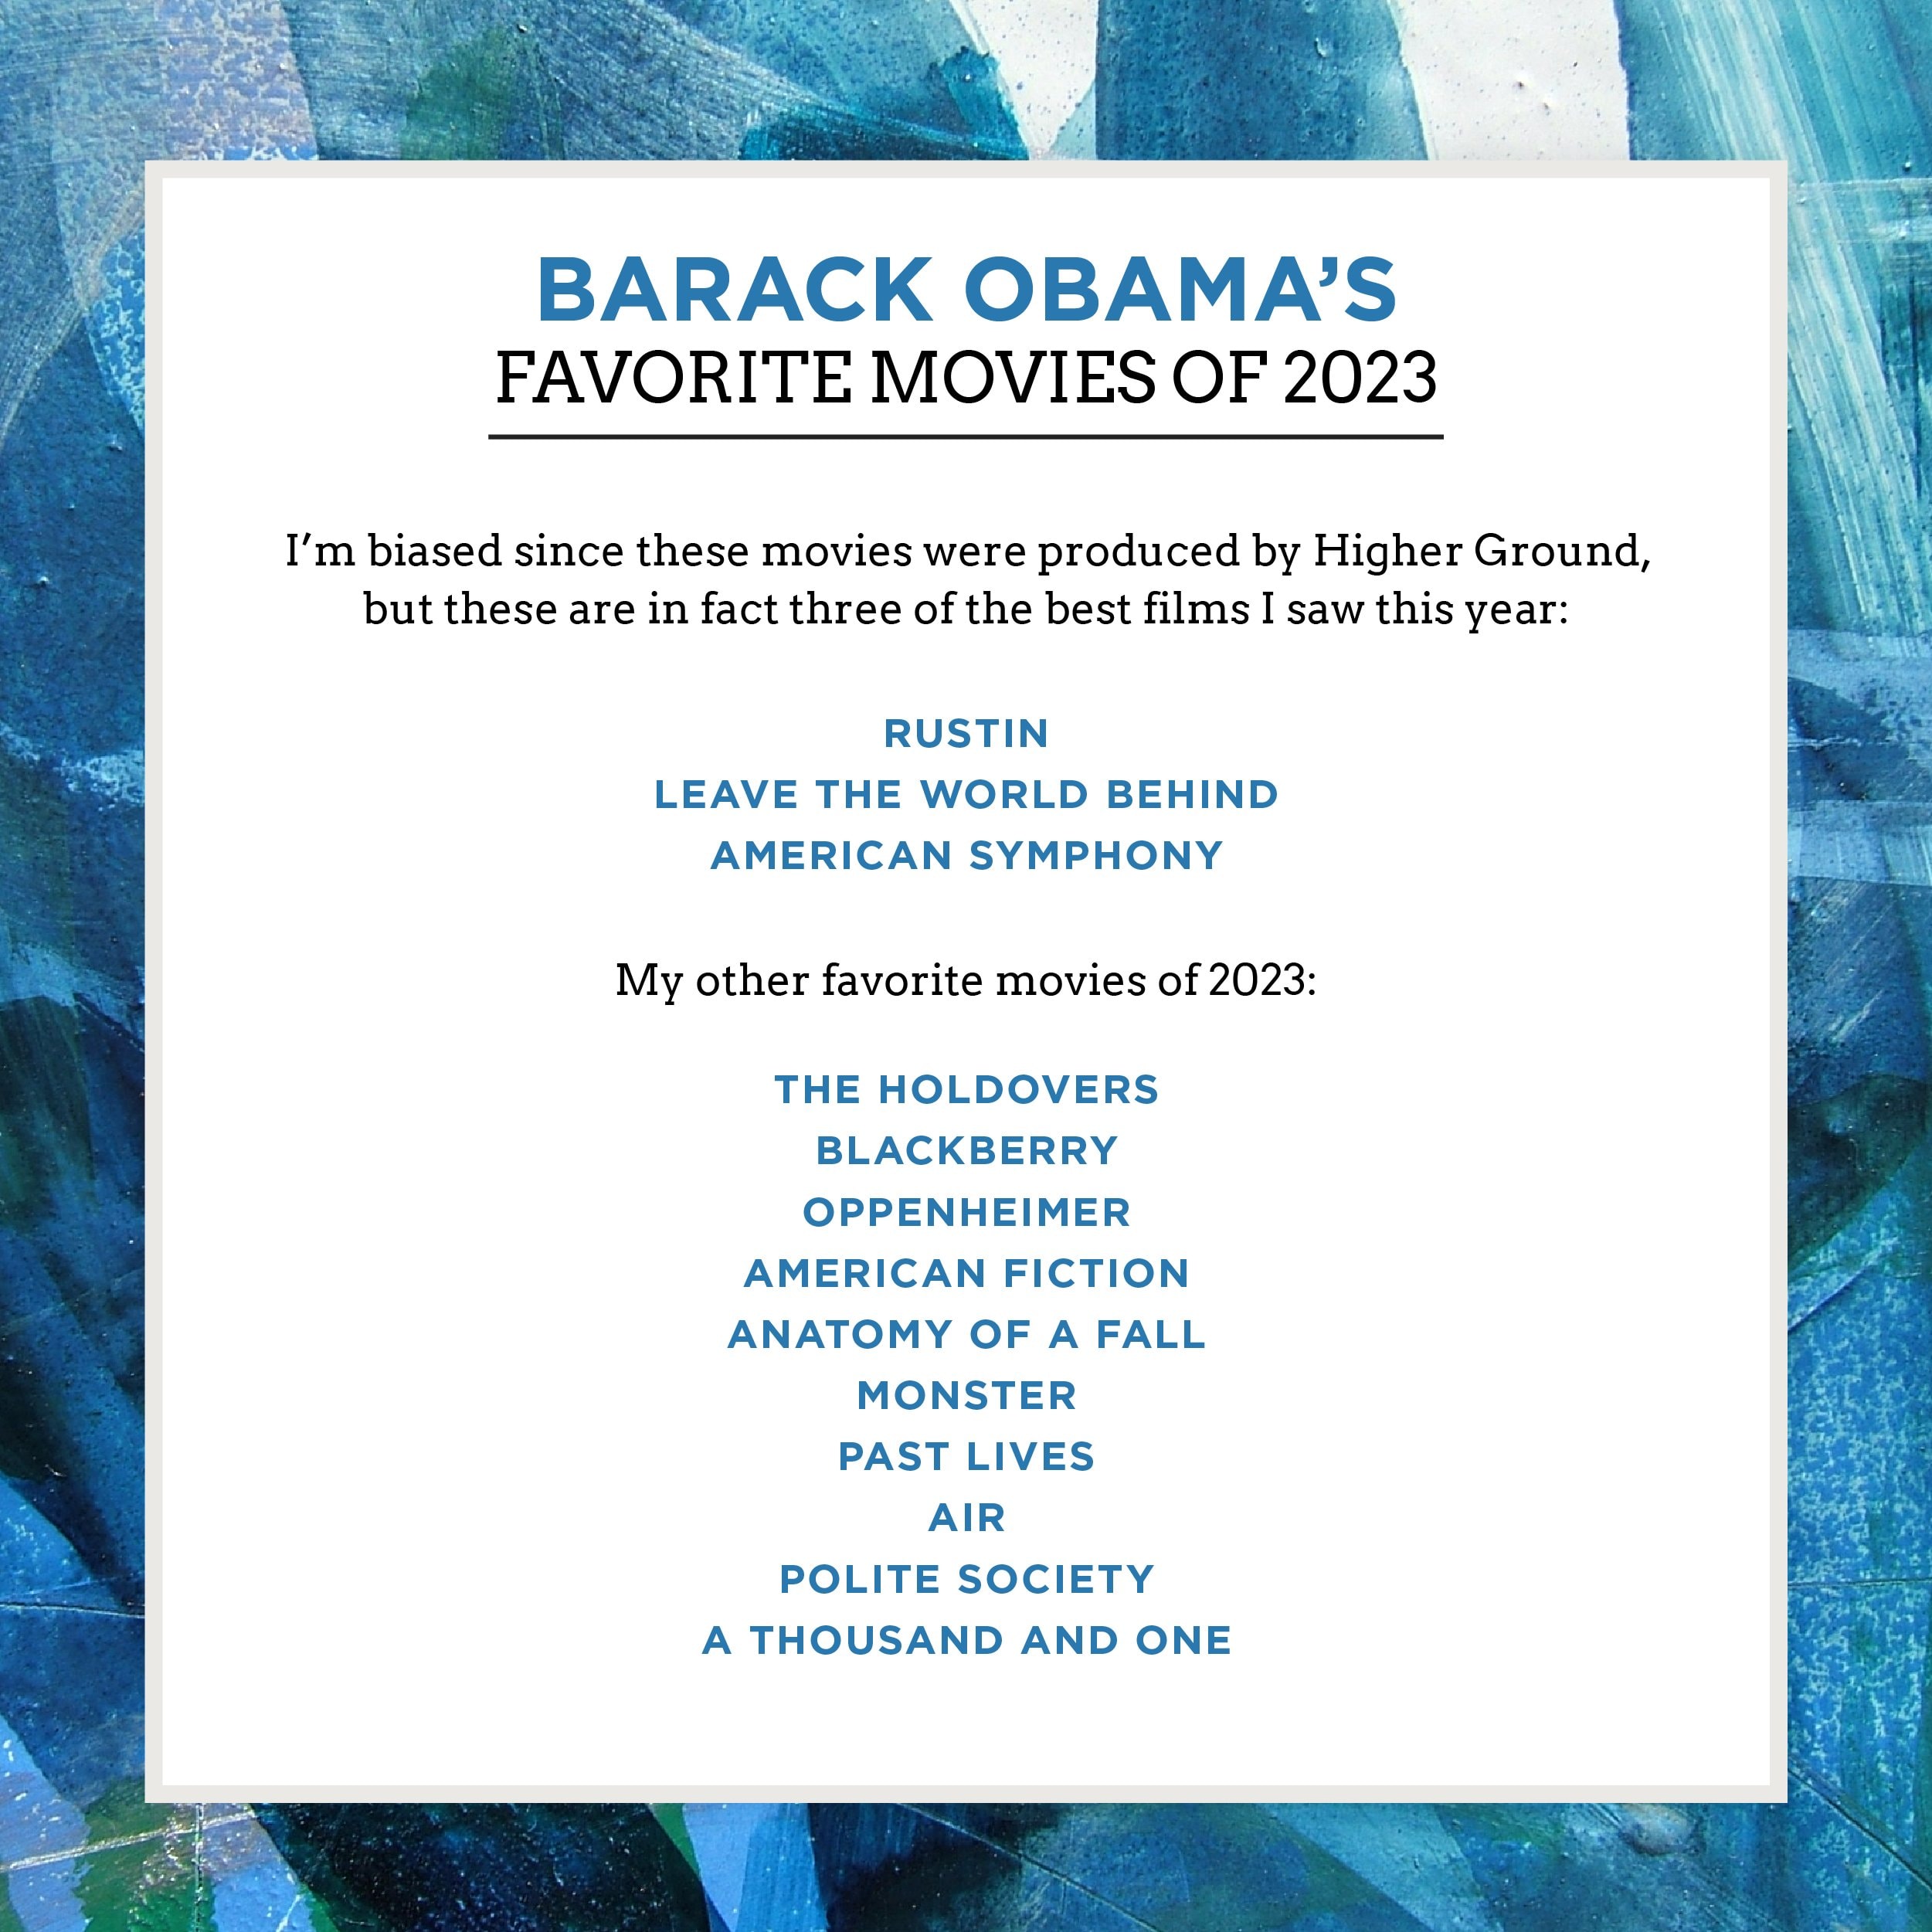 Barack Obama 公布個人 2023 年度電影清單：《奧本海默 Oppenheimer》榮獲總統級好評